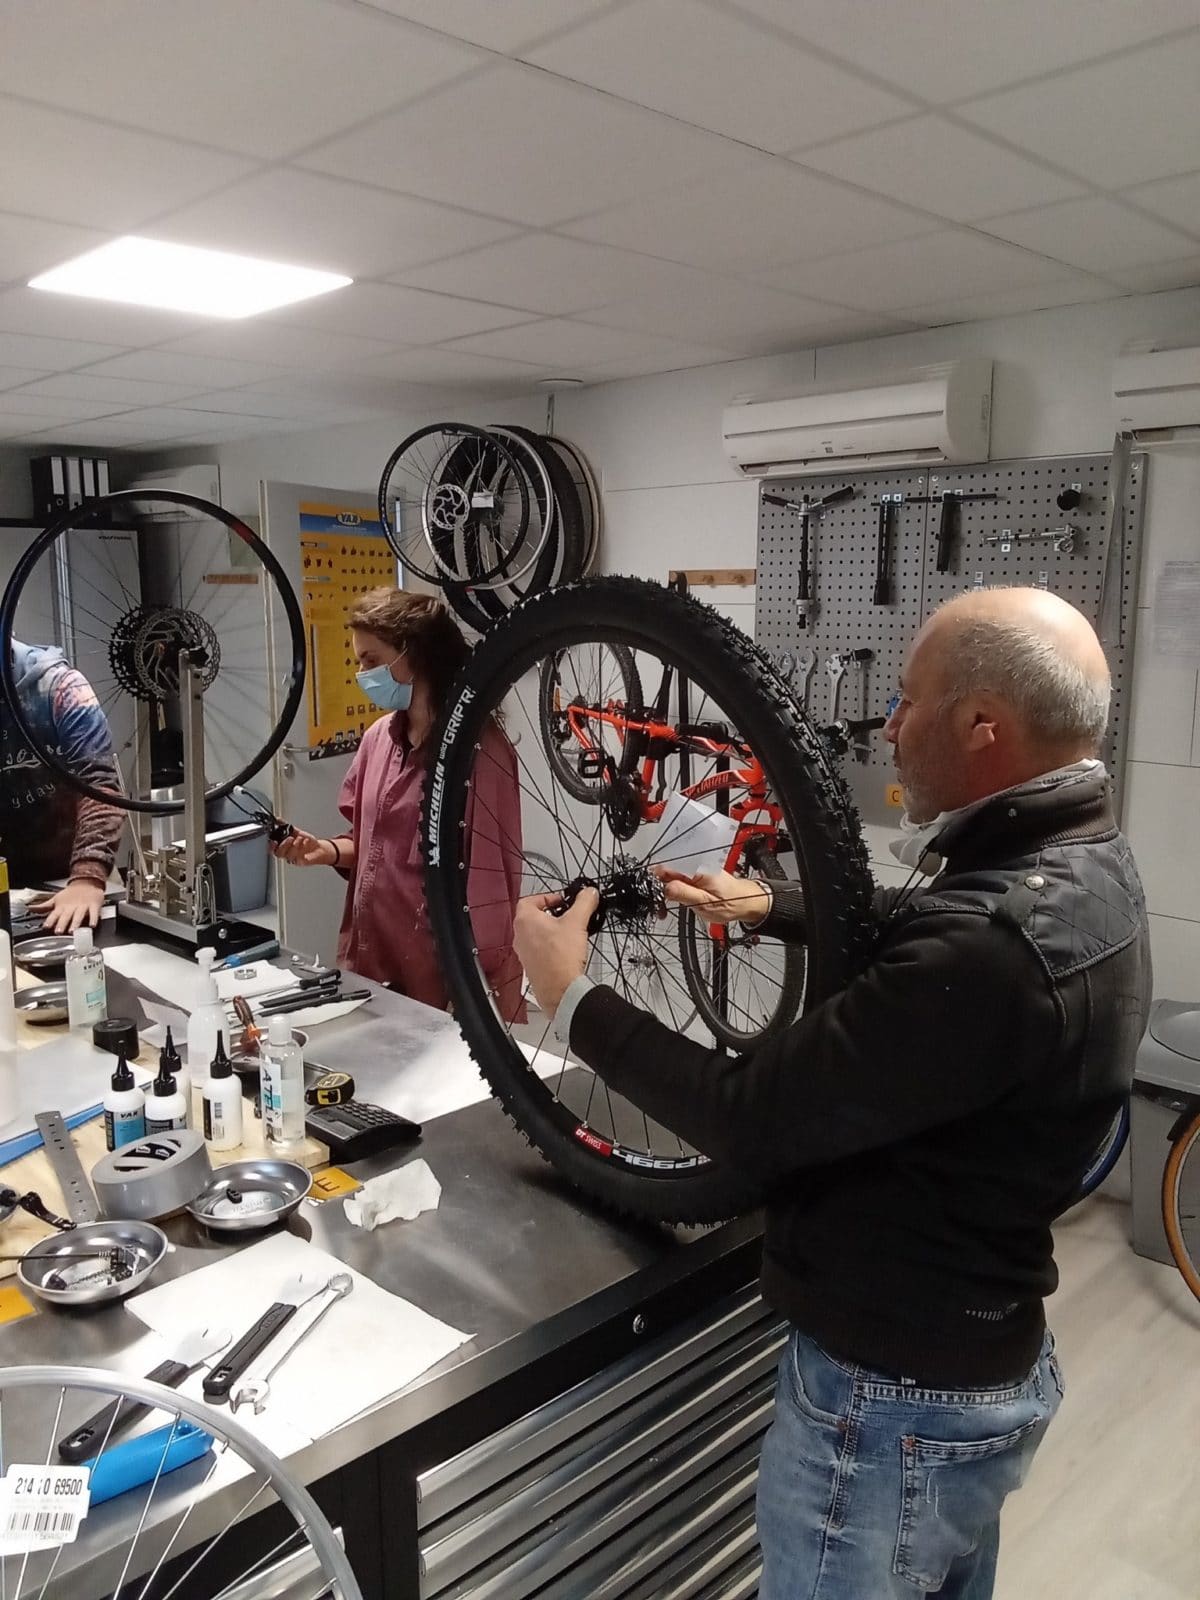 Institut de formation du vélo | Monteur Préparateur Cycle – MPC